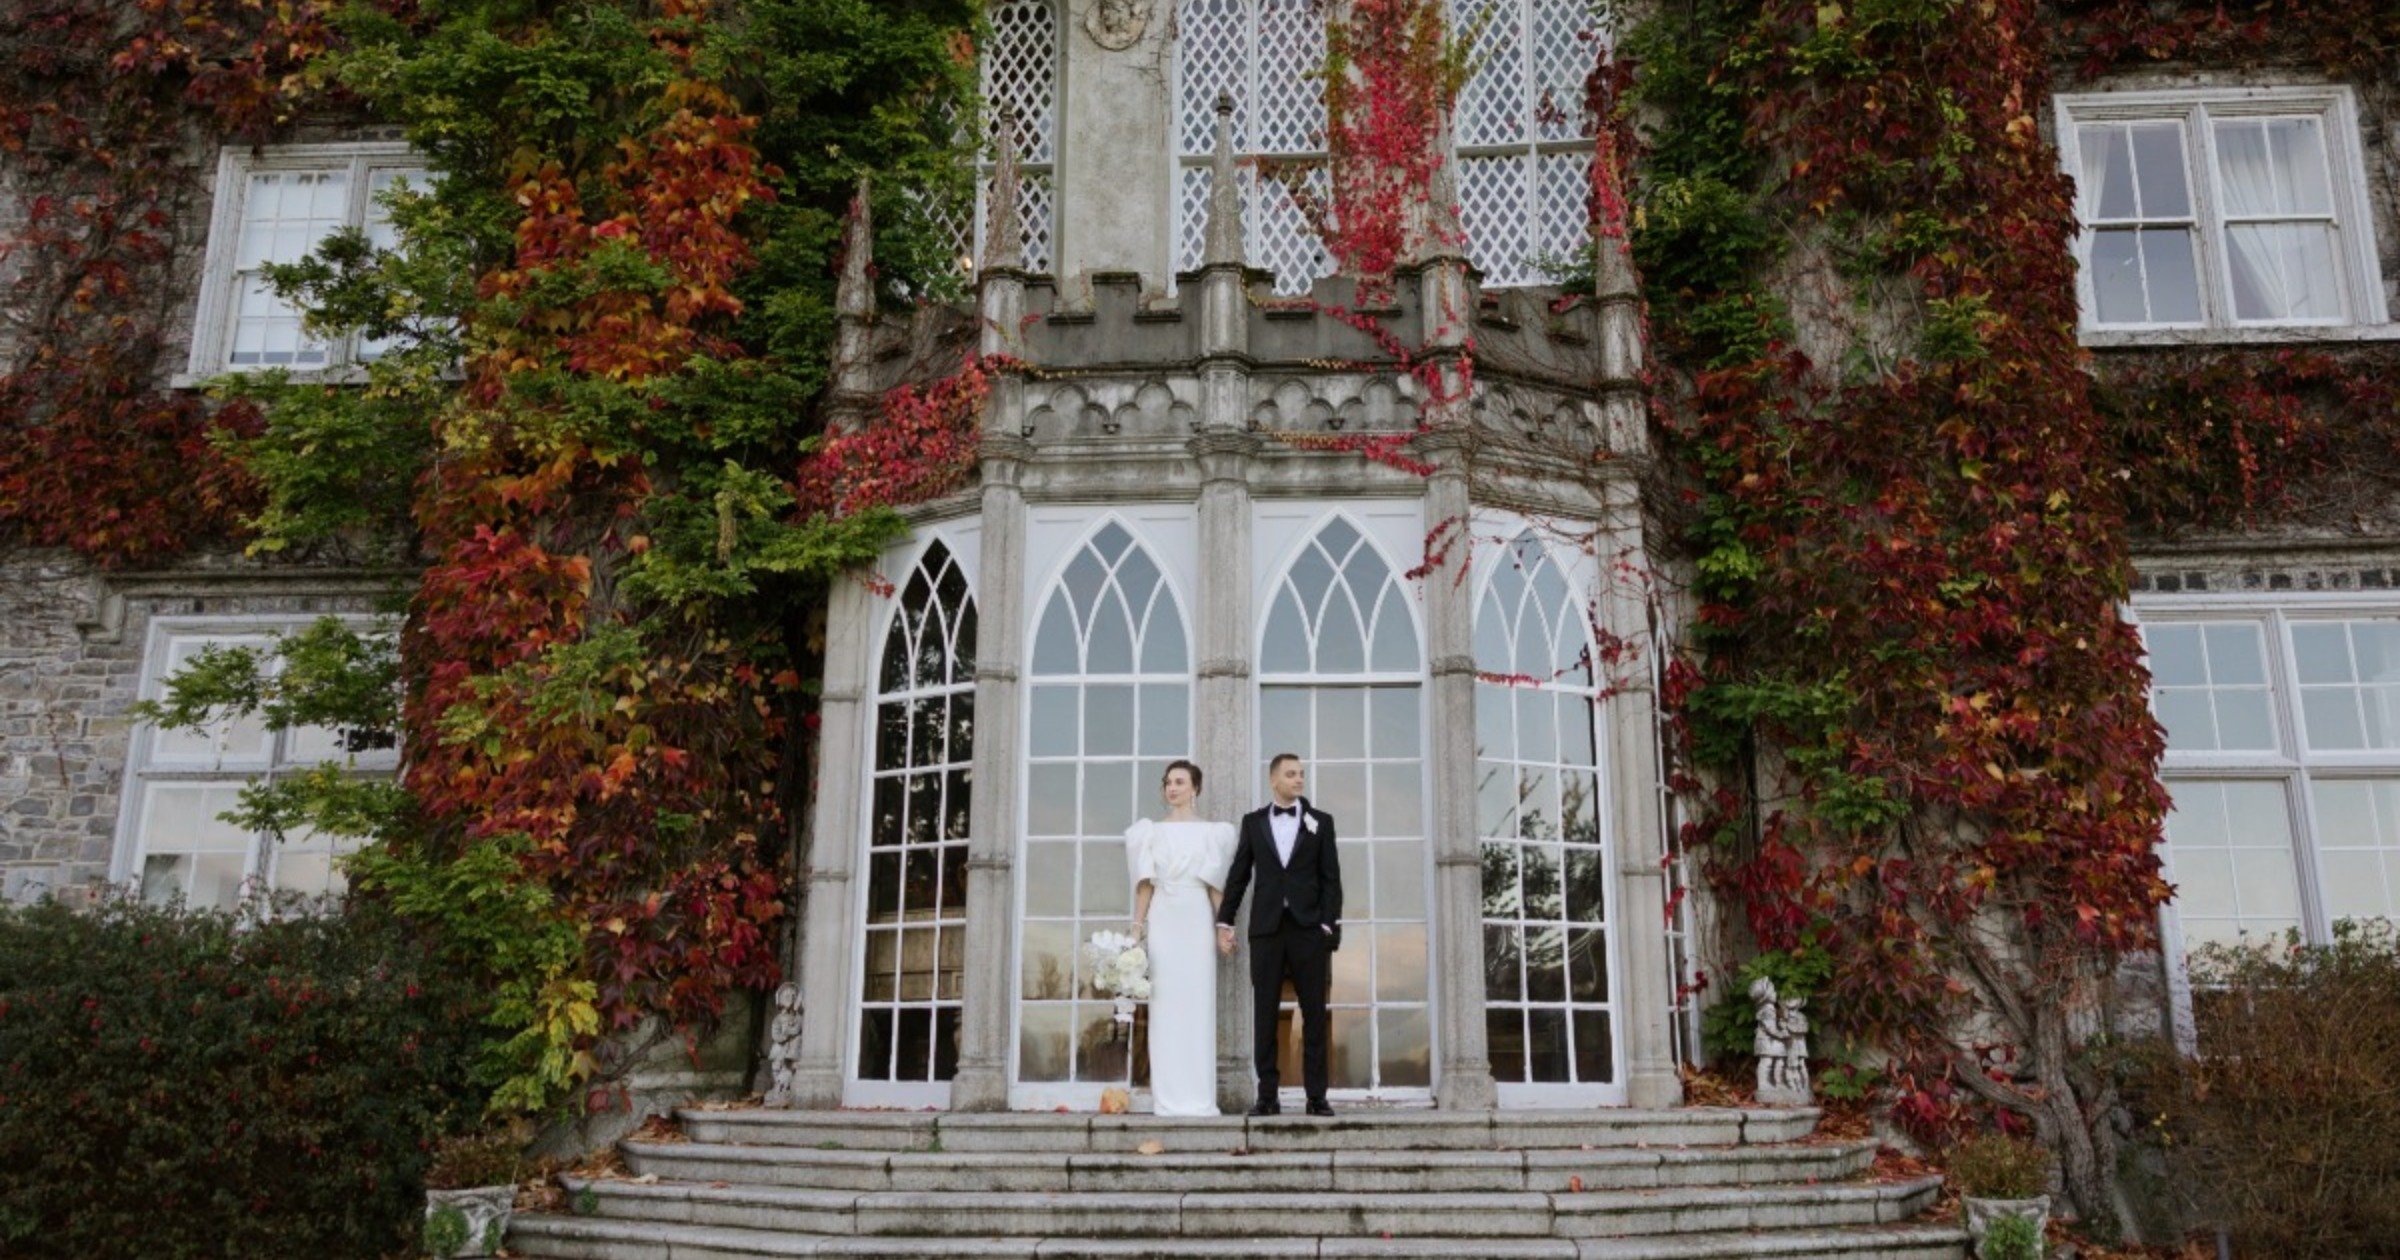 Luxury Destination Wedding Shoot At Luttrellstown Castle in Ireland